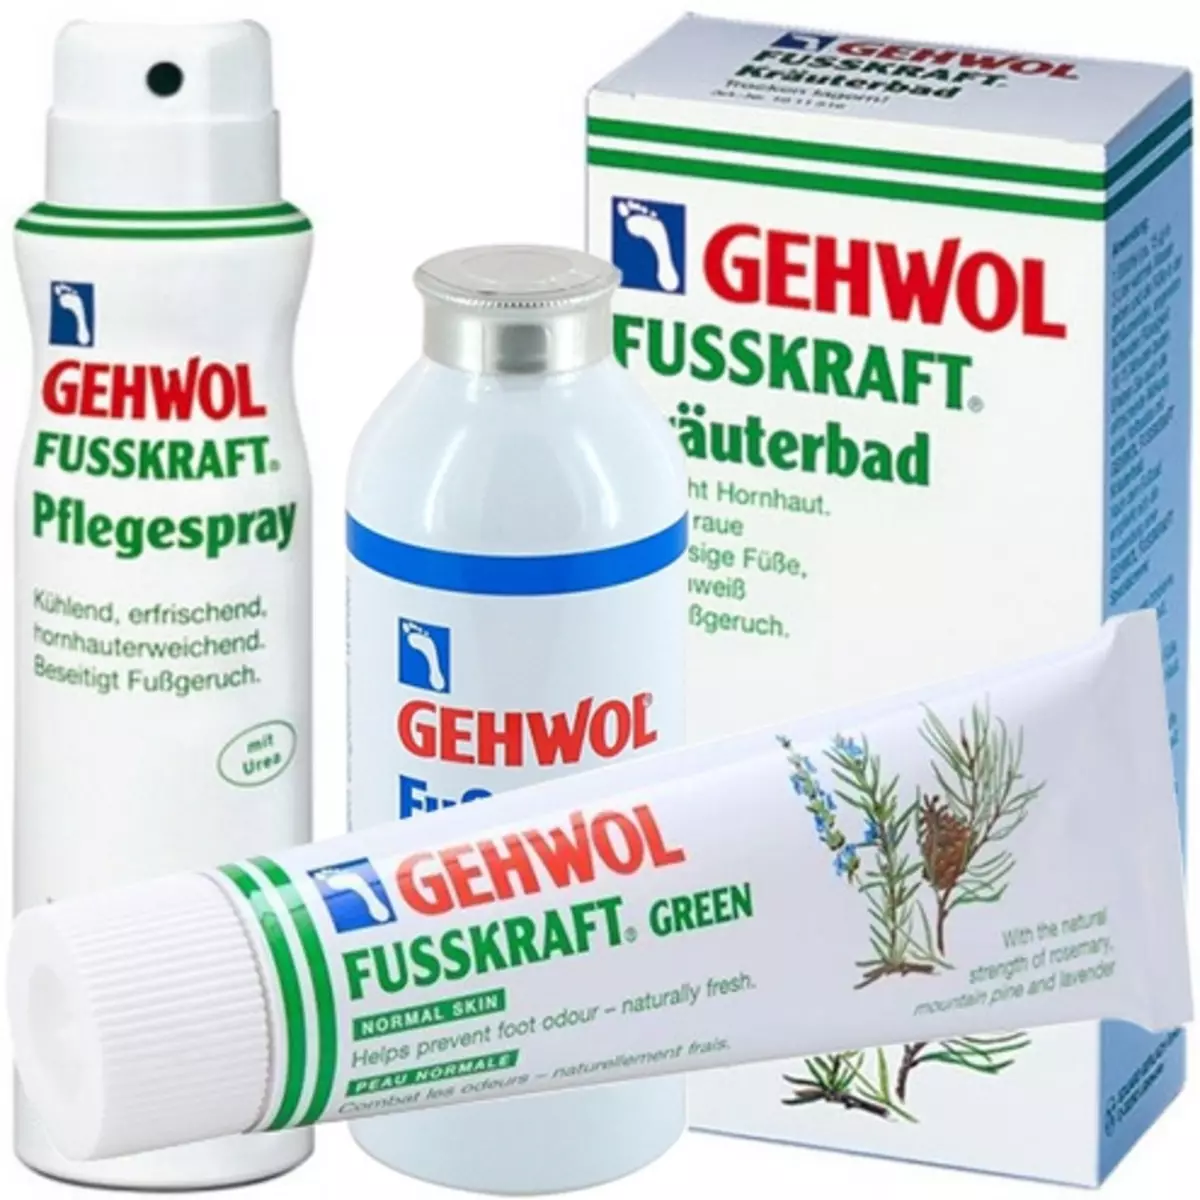 Kubmétika Gehwolic: Review tina produk kosmetik Jerman. Naros na sareng kontra 4744_26